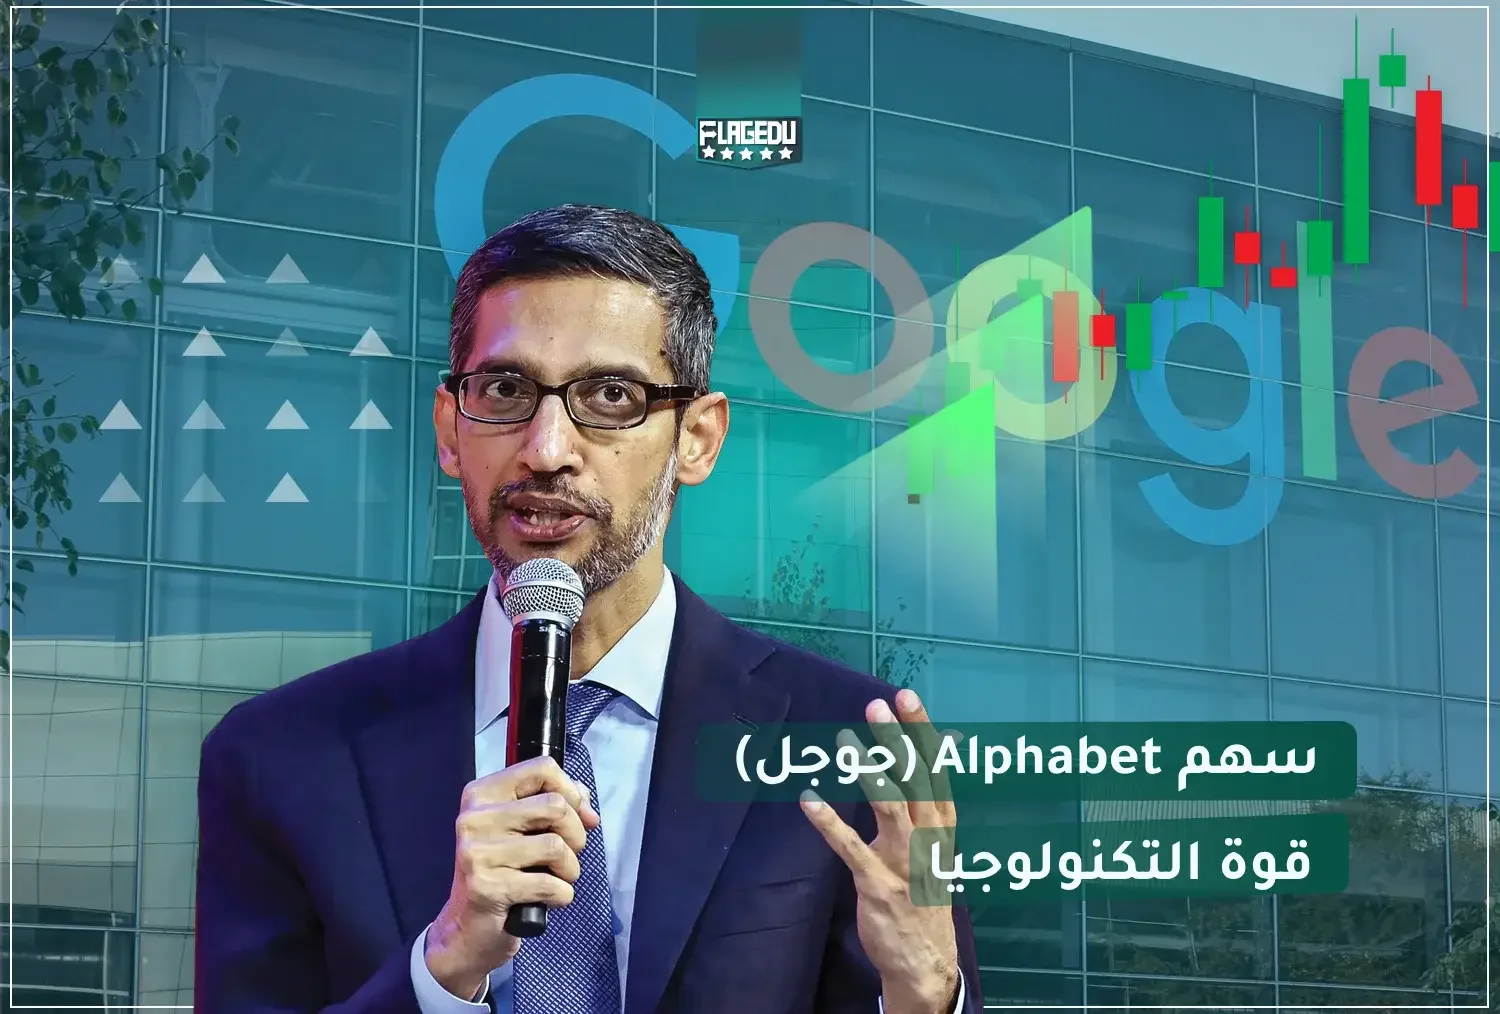 Alphabet (Google) Stock: A Technology Powerhouse